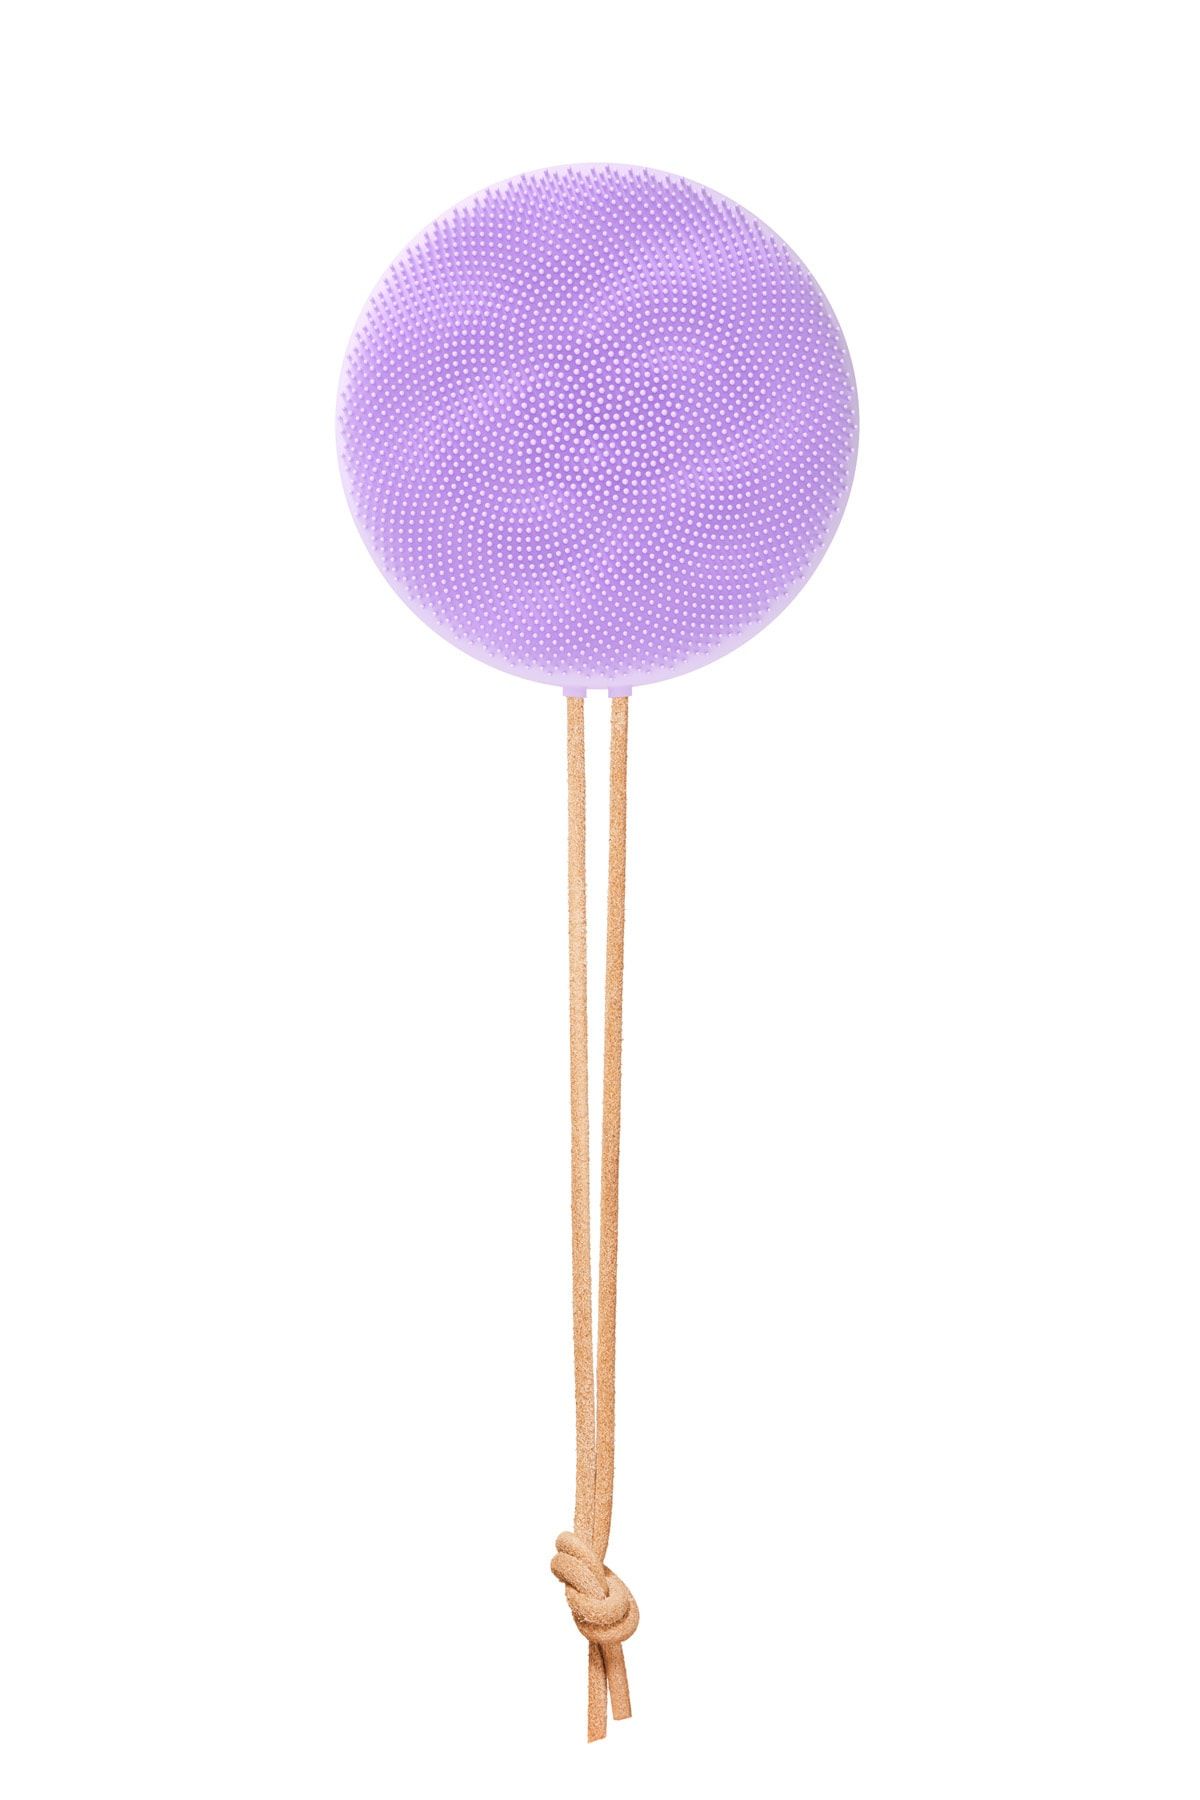 Foreo Luna™ 4 Body T-sonic™ Masajlı Vücut Fırçası, Lavender